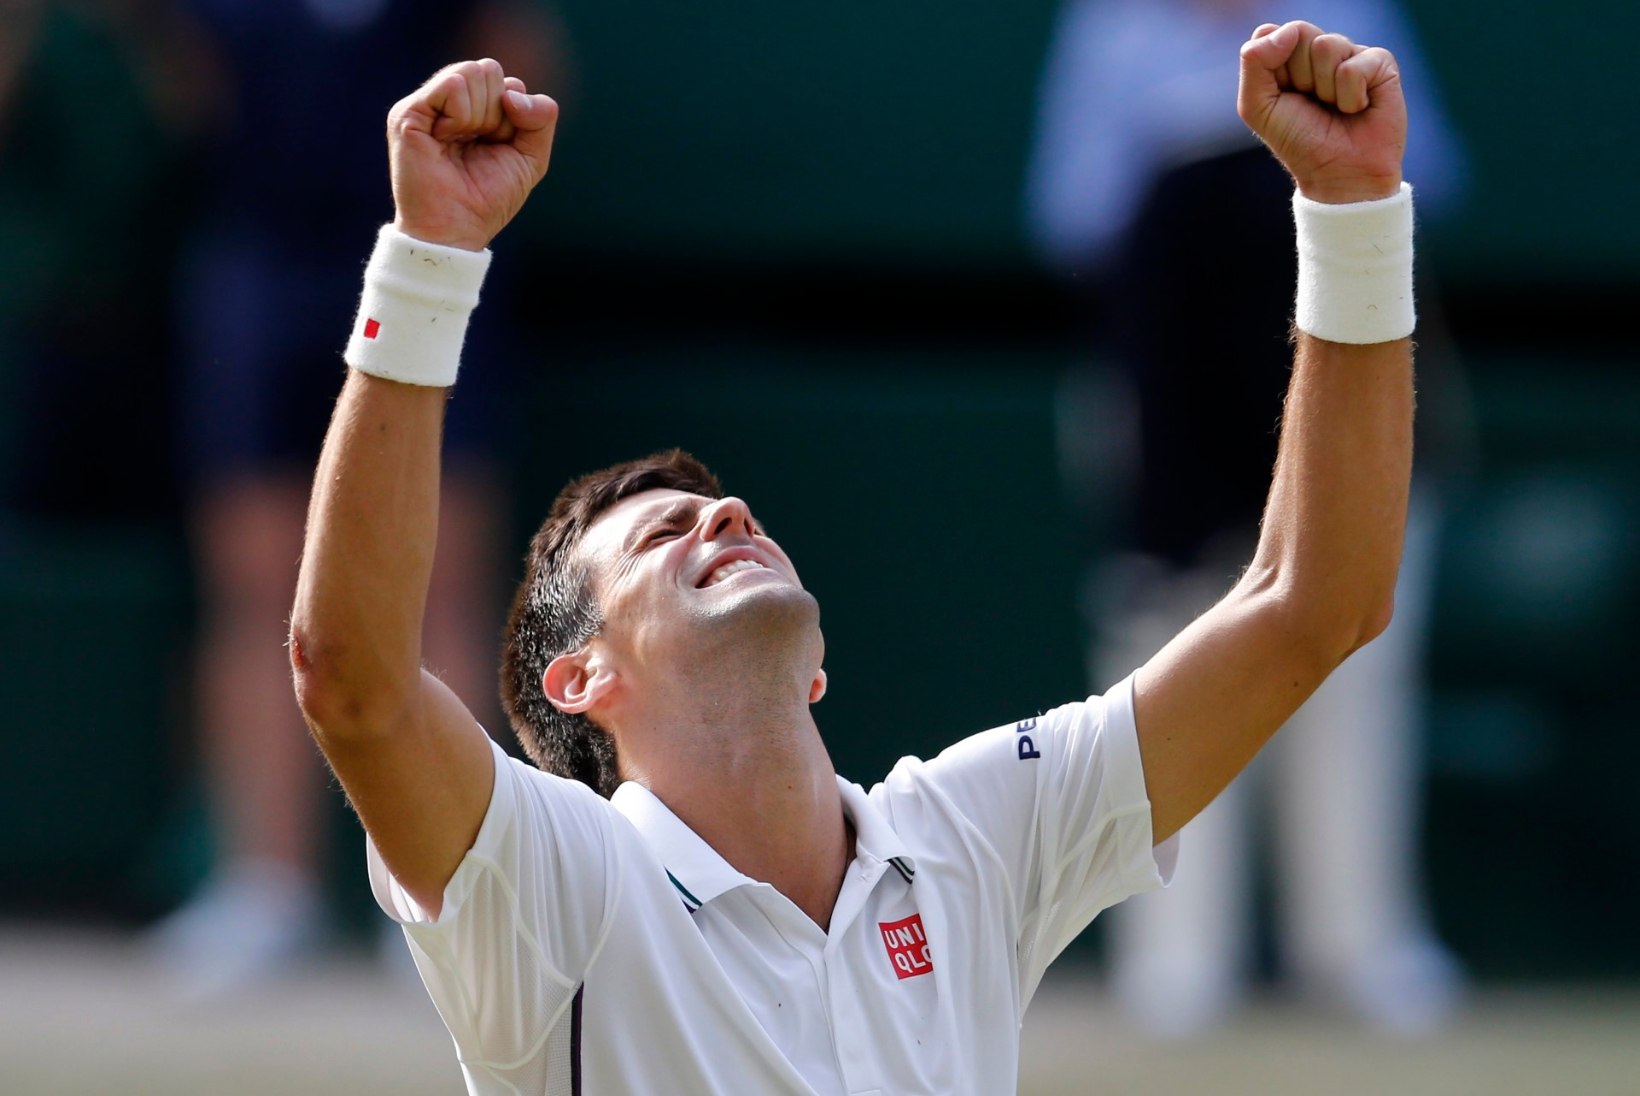 FOTOD: suurepärane mäng! Djokovic alistas Federeri ja krooniti Wimbledoni tšempioniks